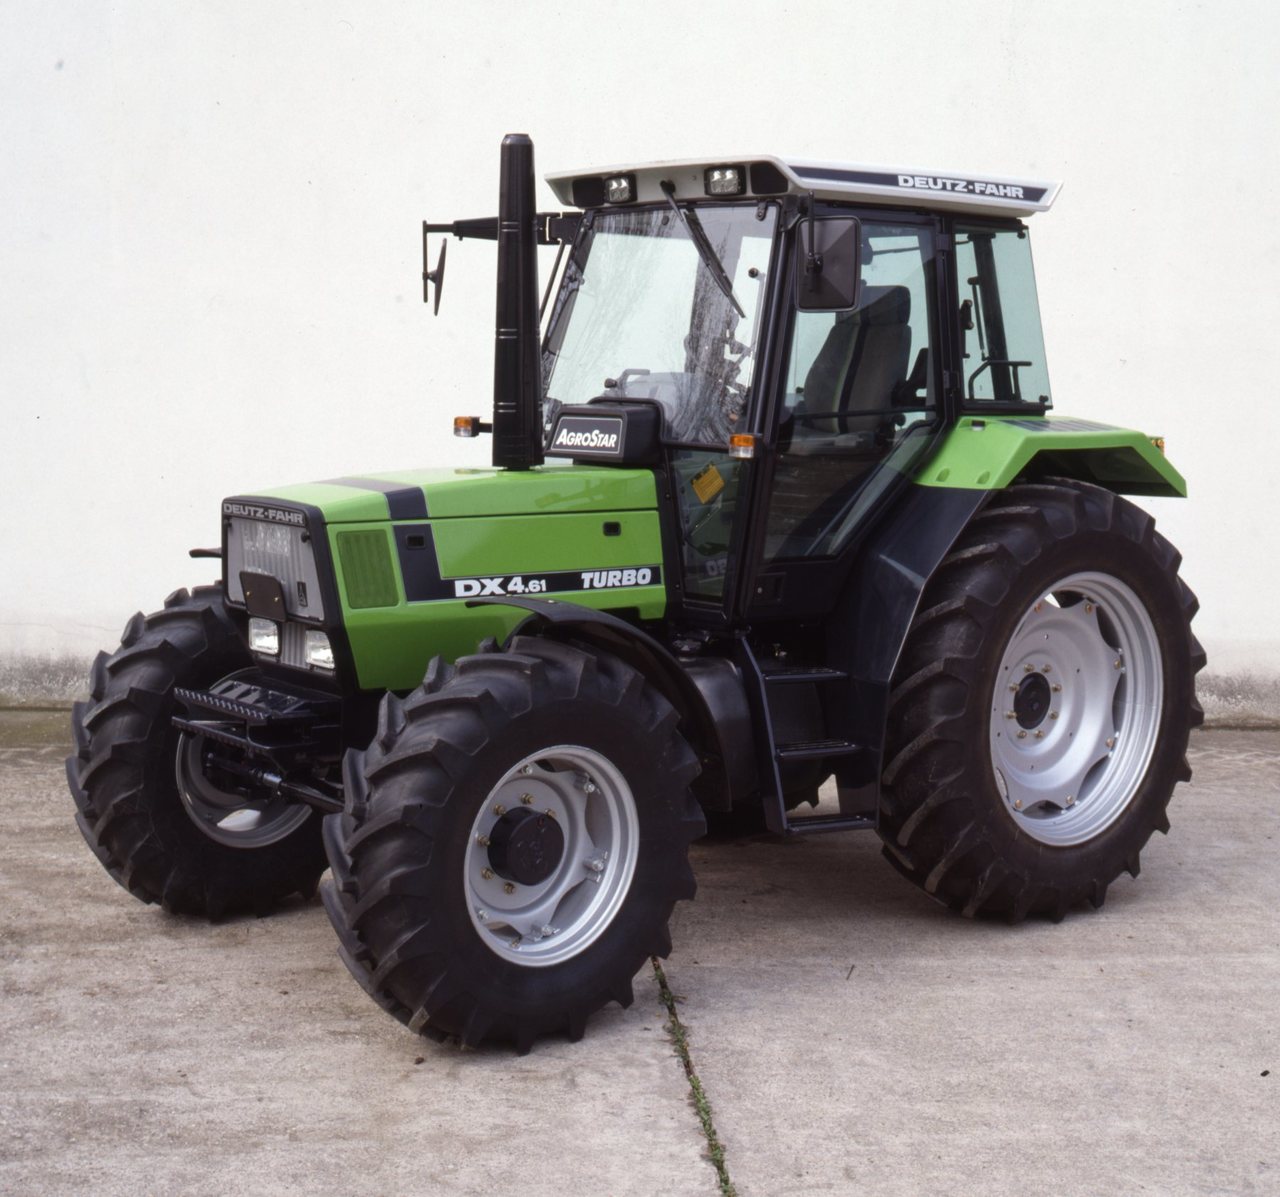 Deutz-Fahr AgroStar 4.61 Traktor (Quelle: SDF Archiv)